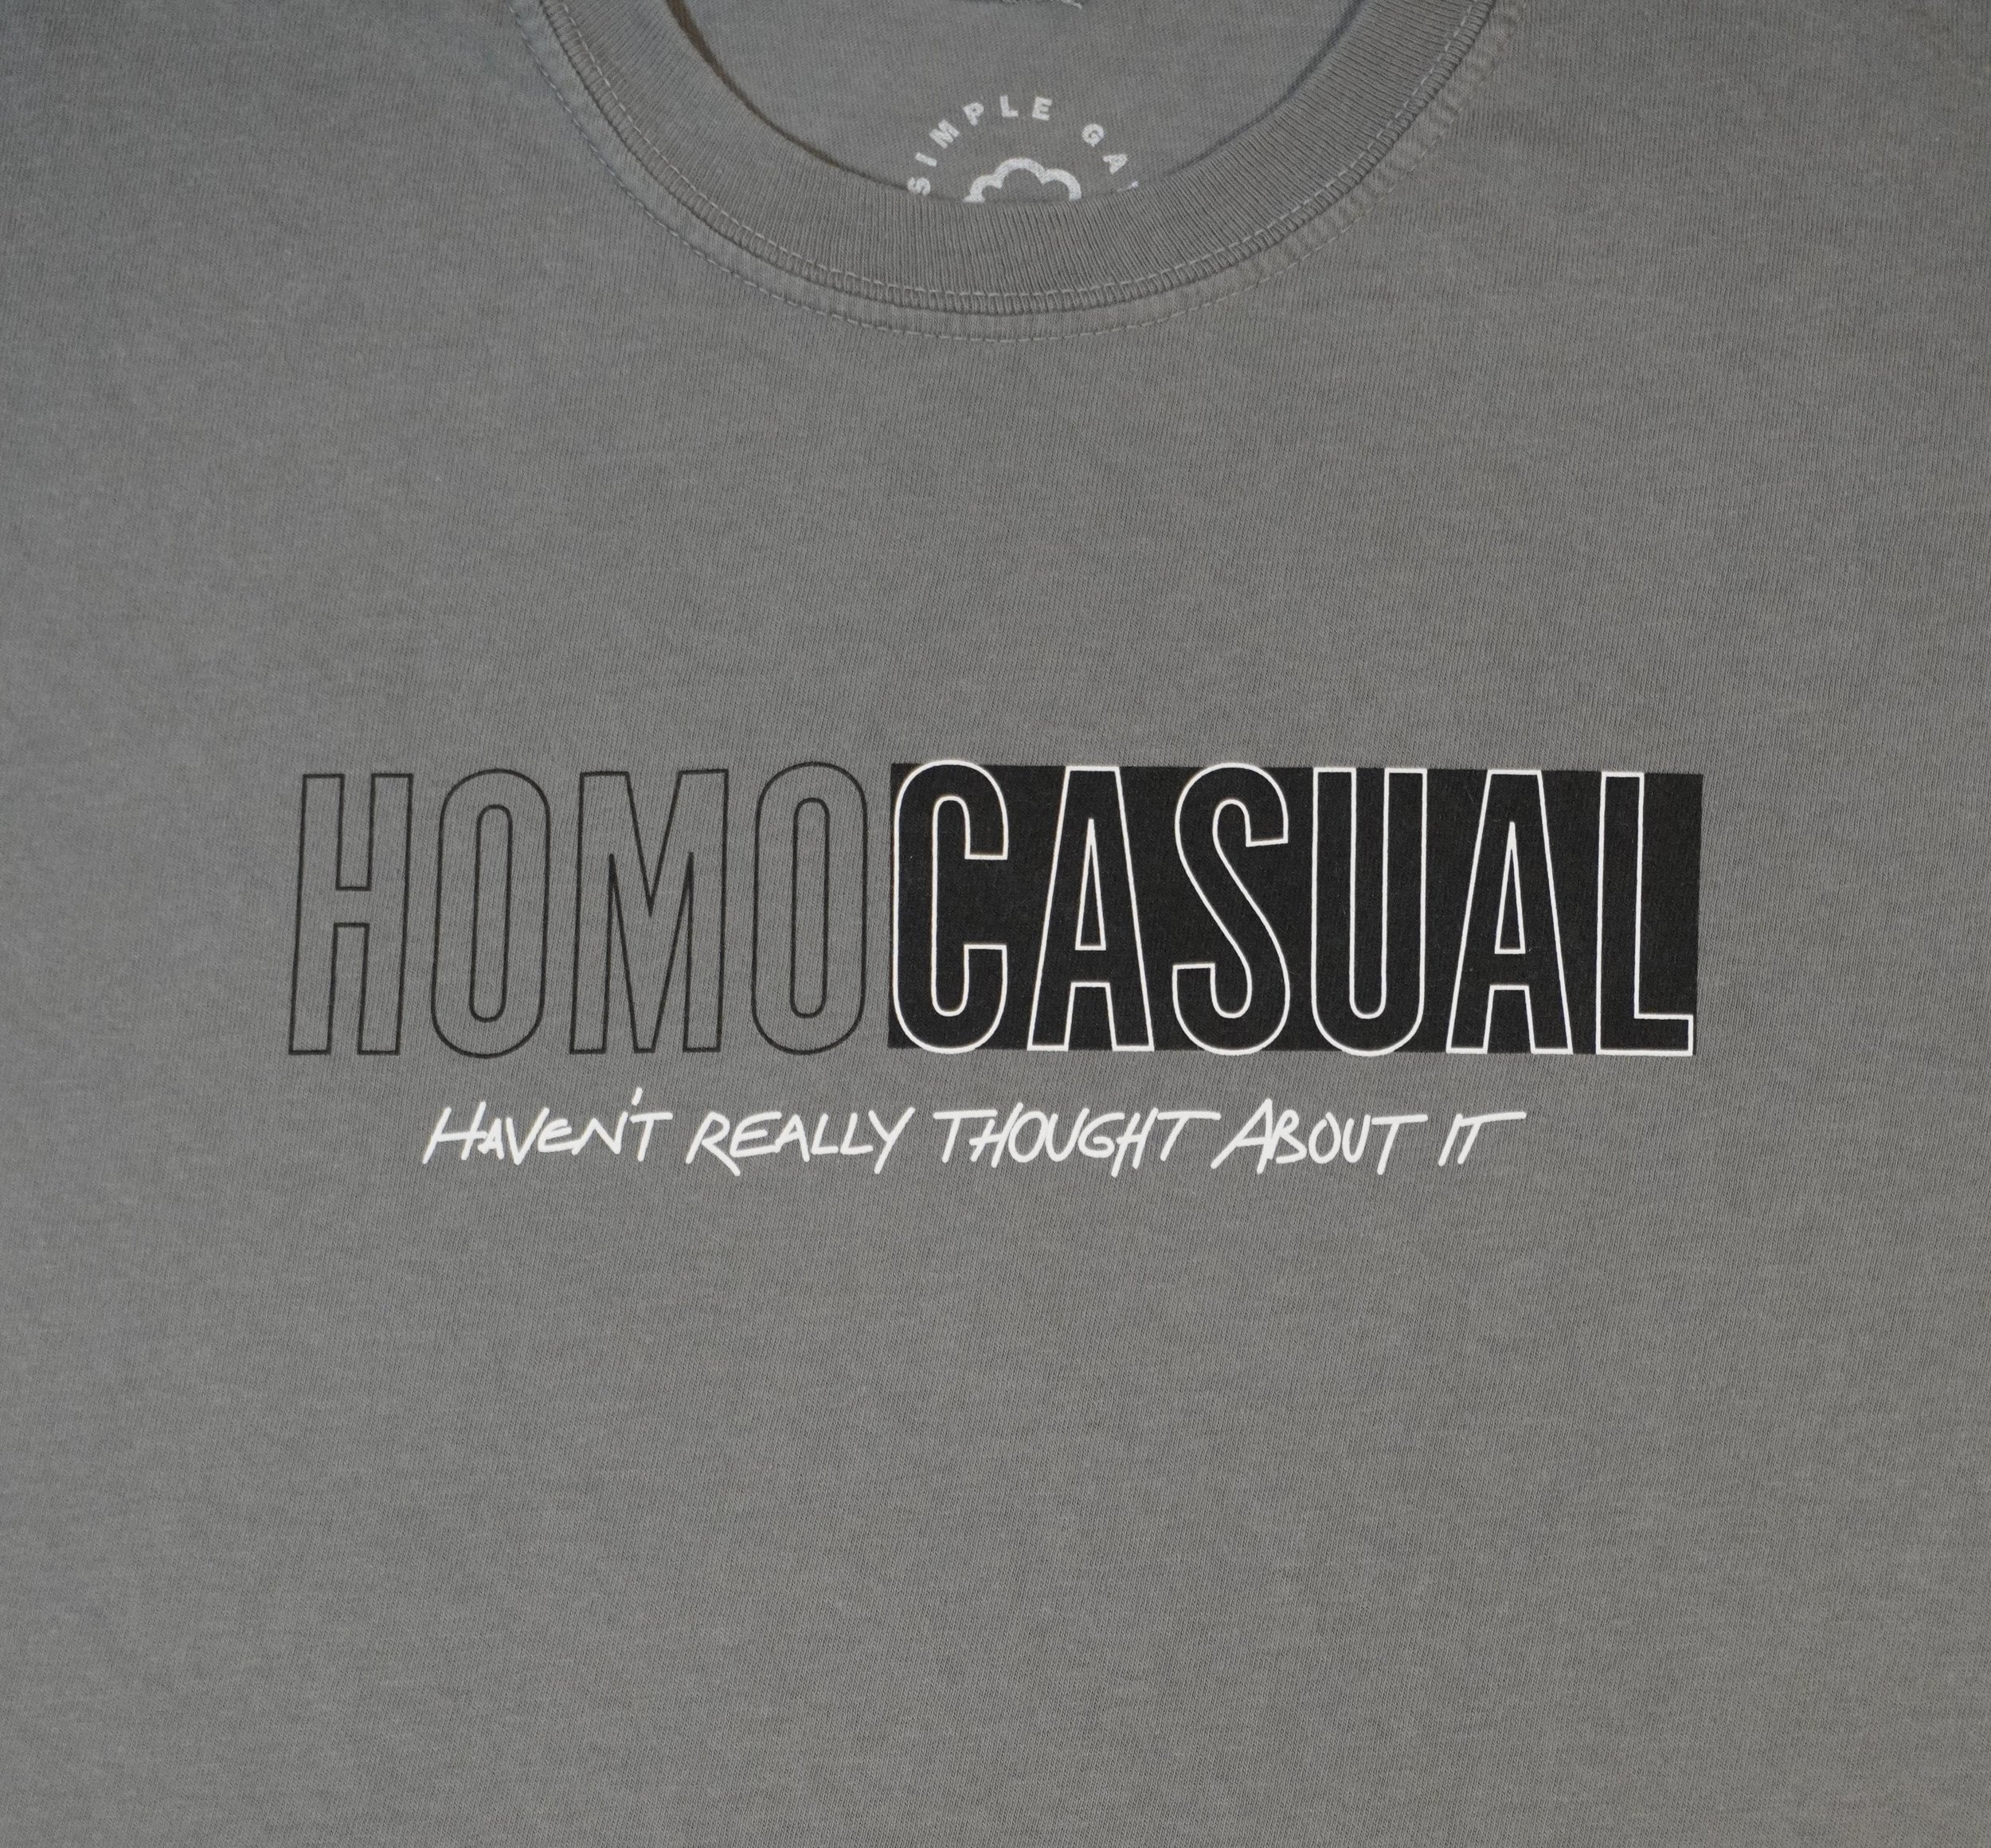 HOMOCASUAL